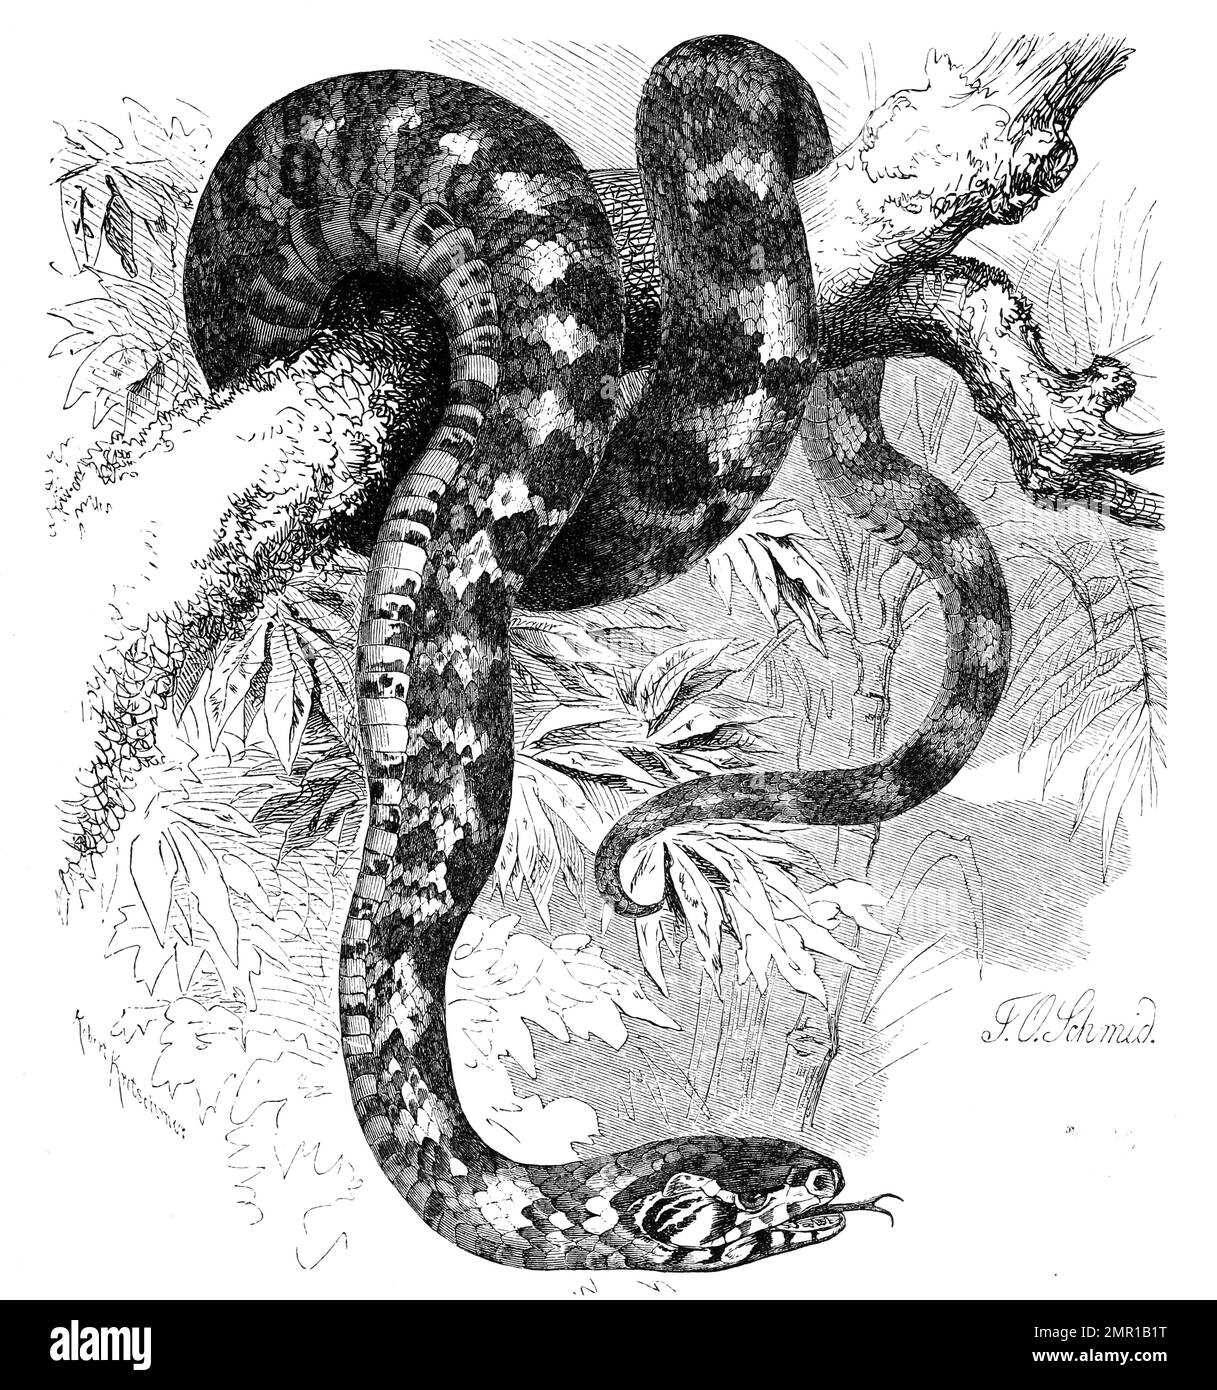 Reptilien, Panthernatter, Otyas pantherinus, Historisch, digital restaurierte Reproduktion von einer Vorlage aus dem 19. Jahrhundert Stock Photo